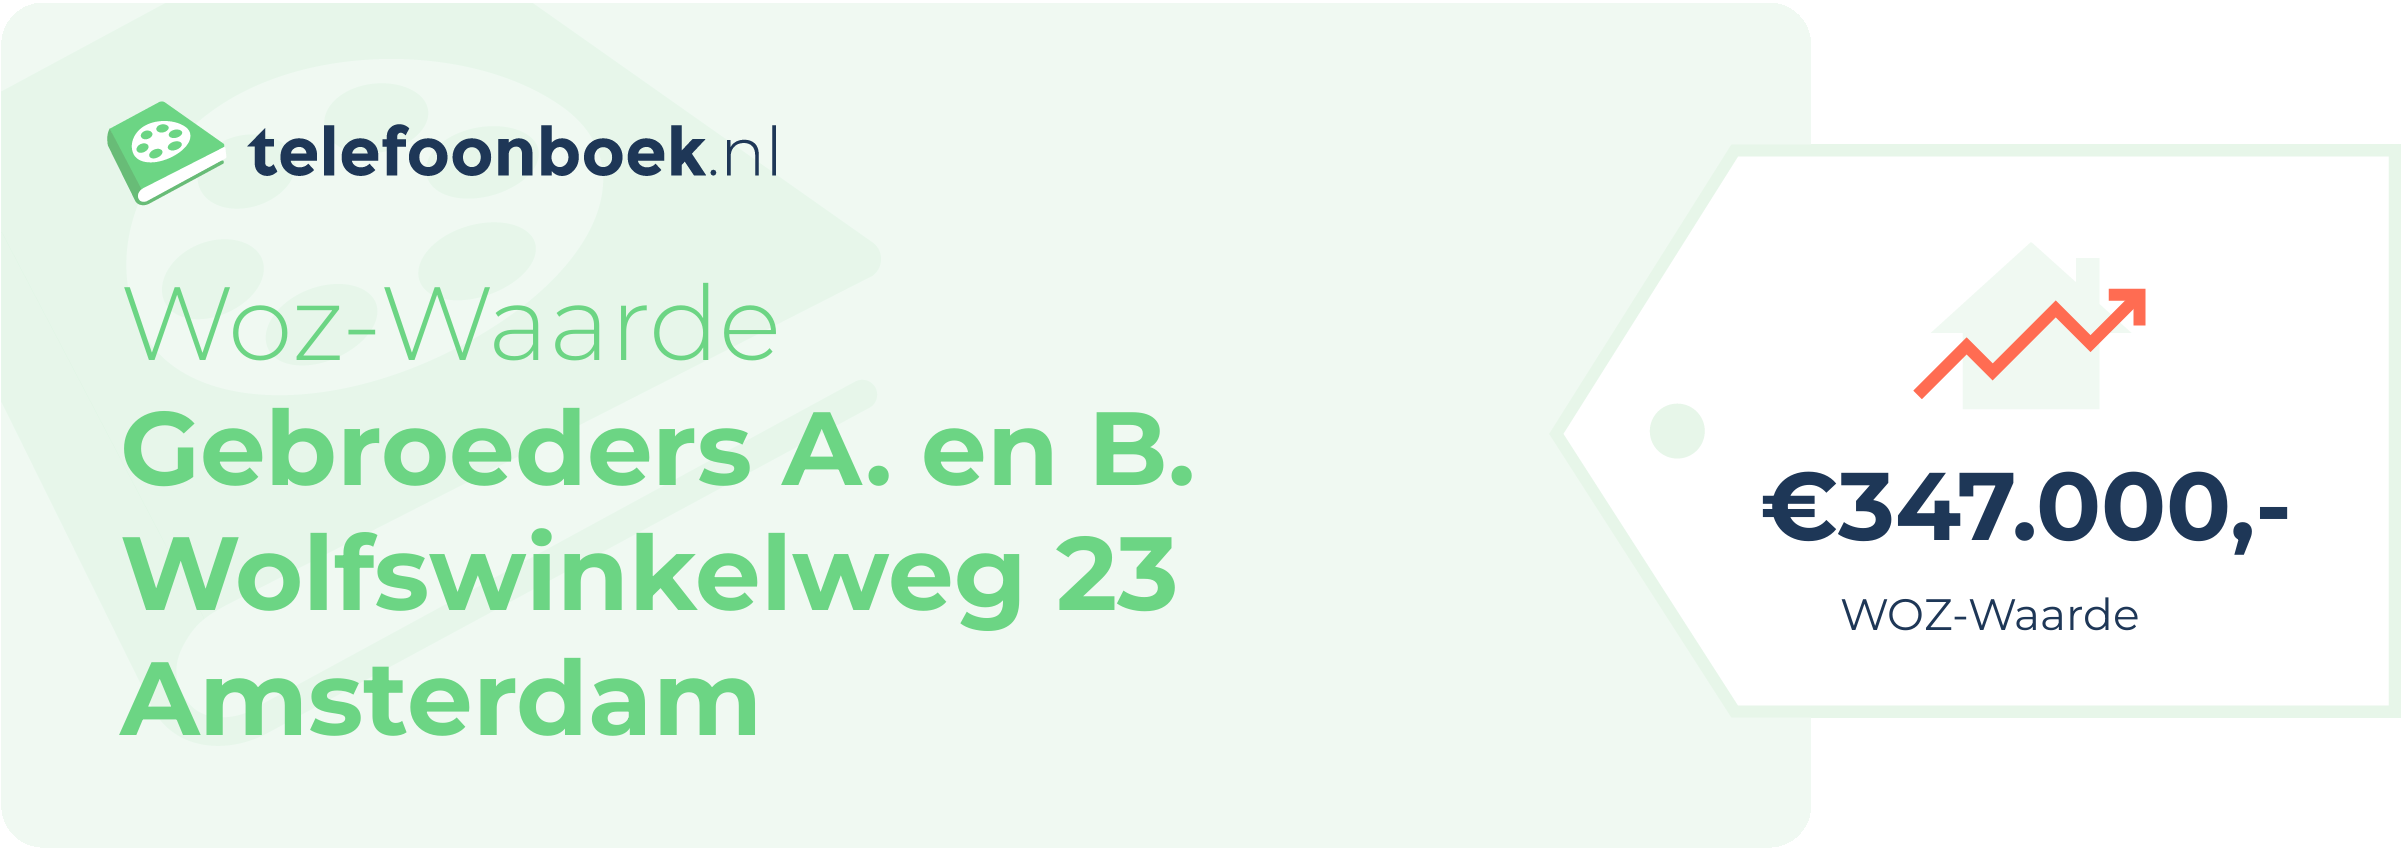 WOZ-waarde Gebroeders A. En B. Wolfswinkelweg 23 Amsterdam